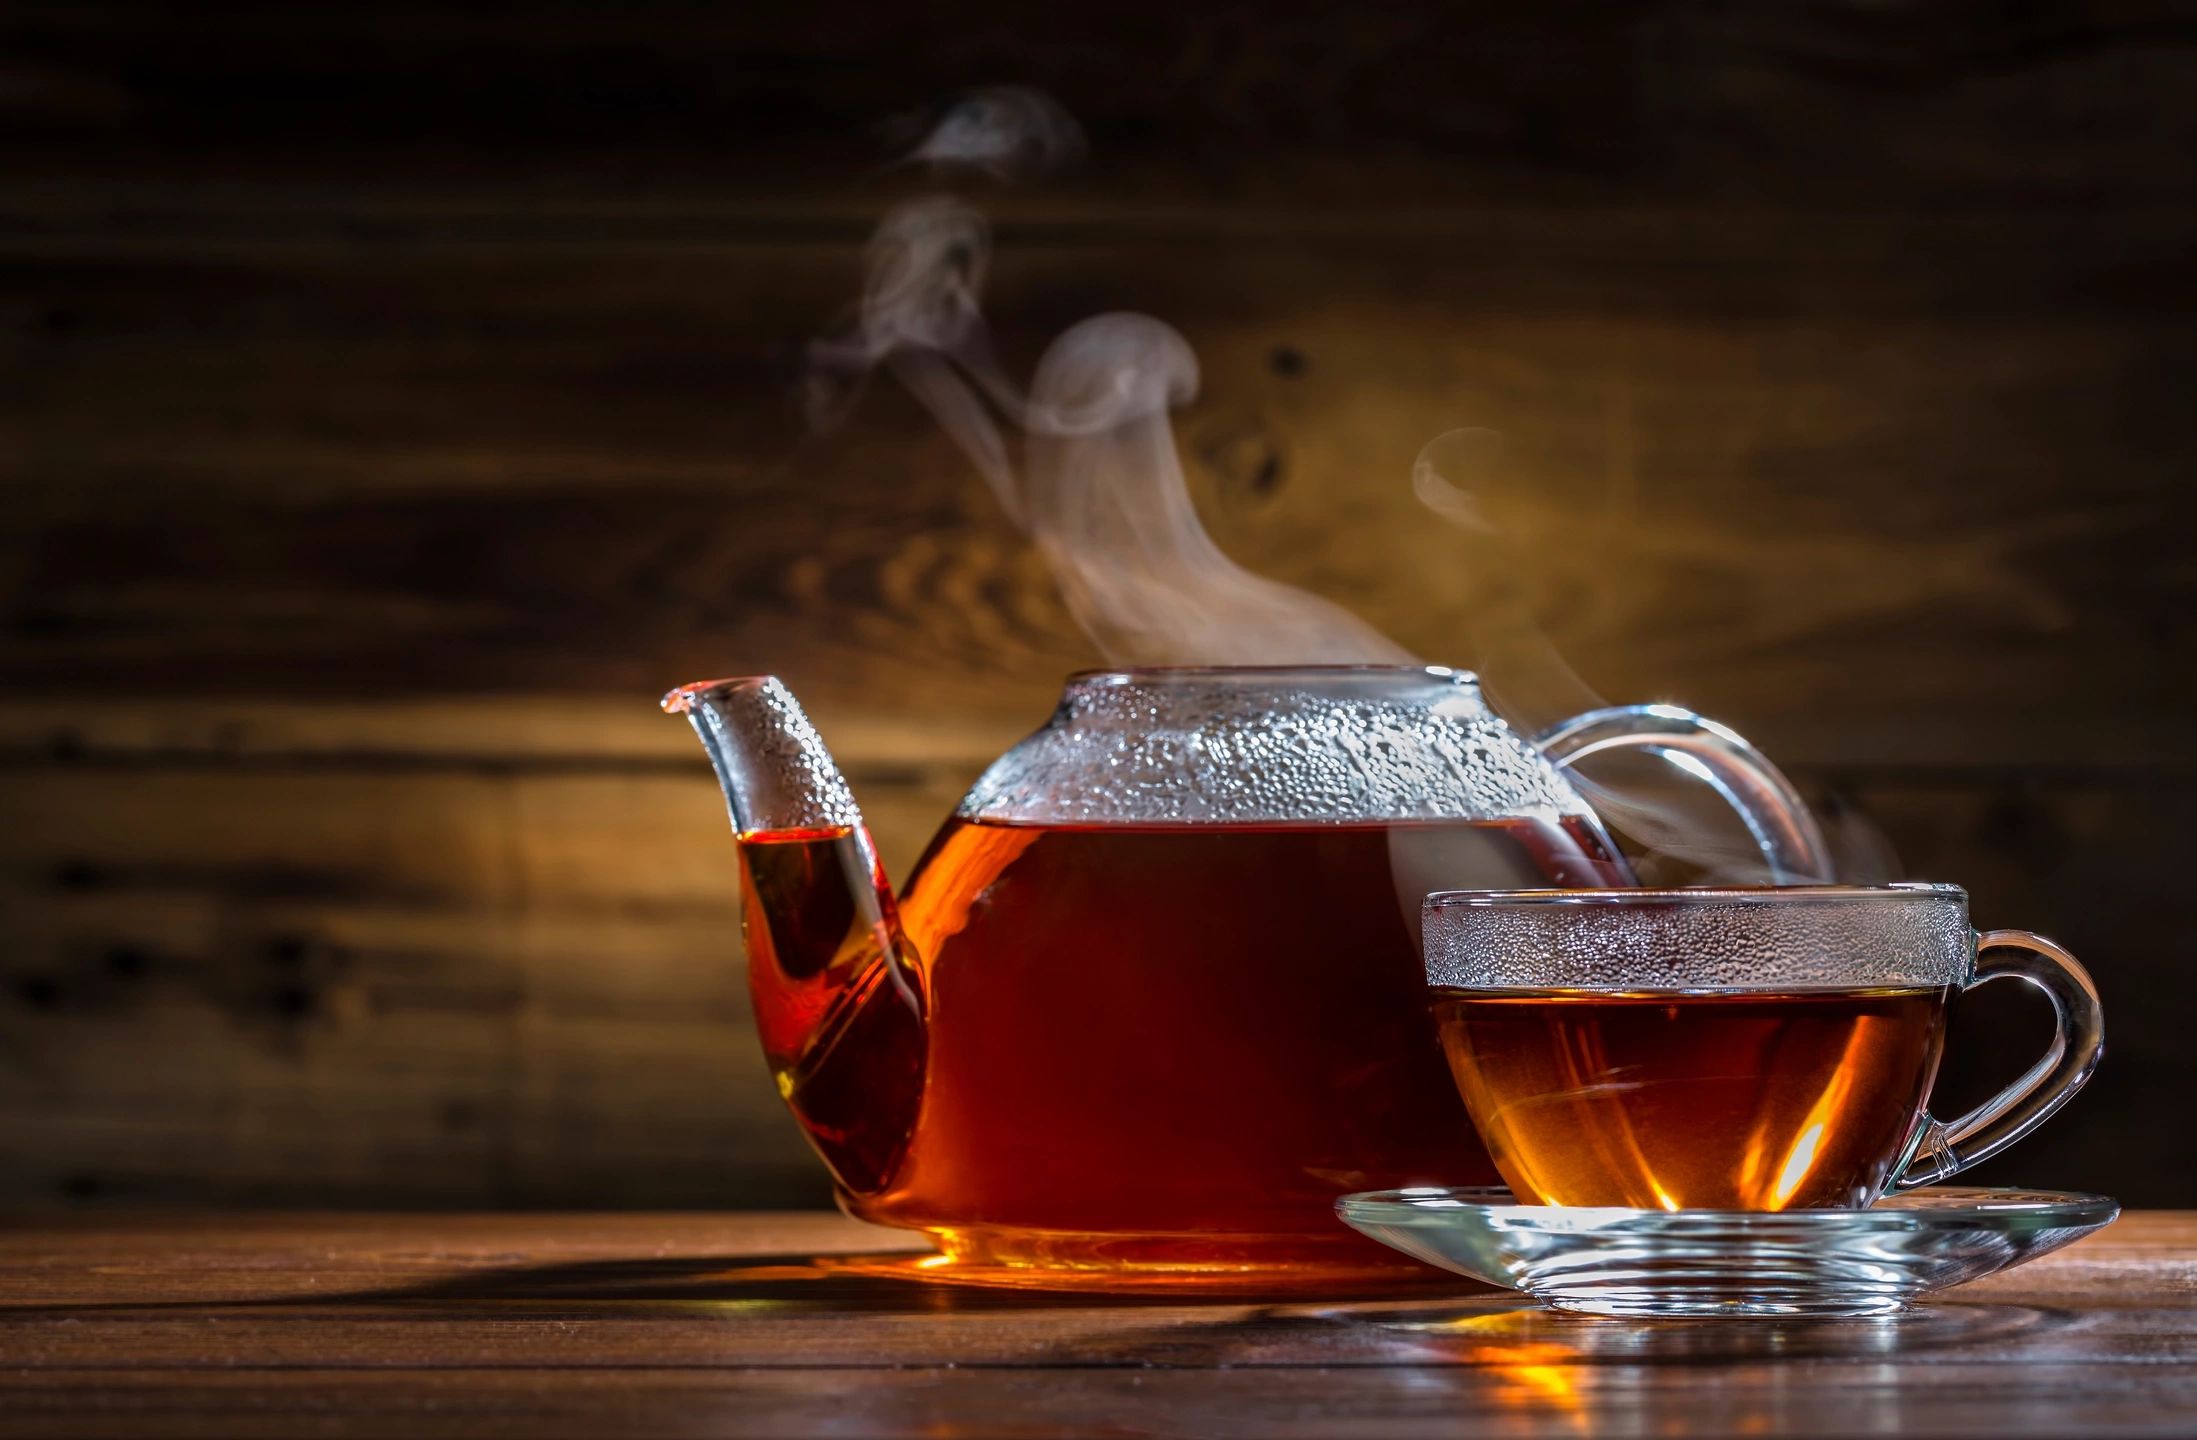 tea set as a gift for boyfriend's parents